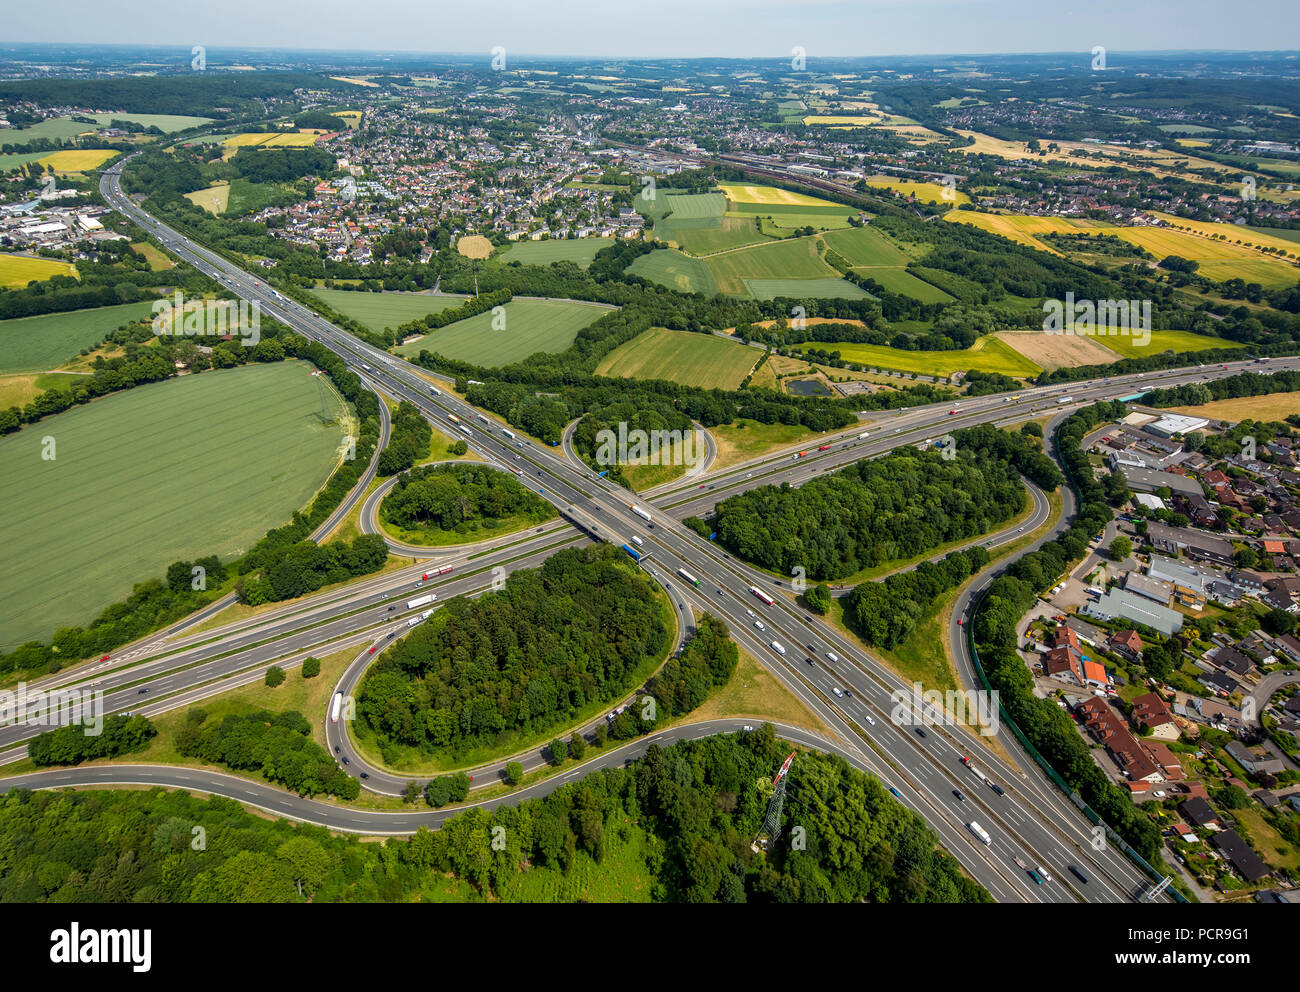 Autobahn A1 and Autobahn A45 Sauerlandlinie, intersection Westhofen with view of Schwerte, Schwerte, Ruhr area, North Rhine-Westphalia, Germany Stock Photo